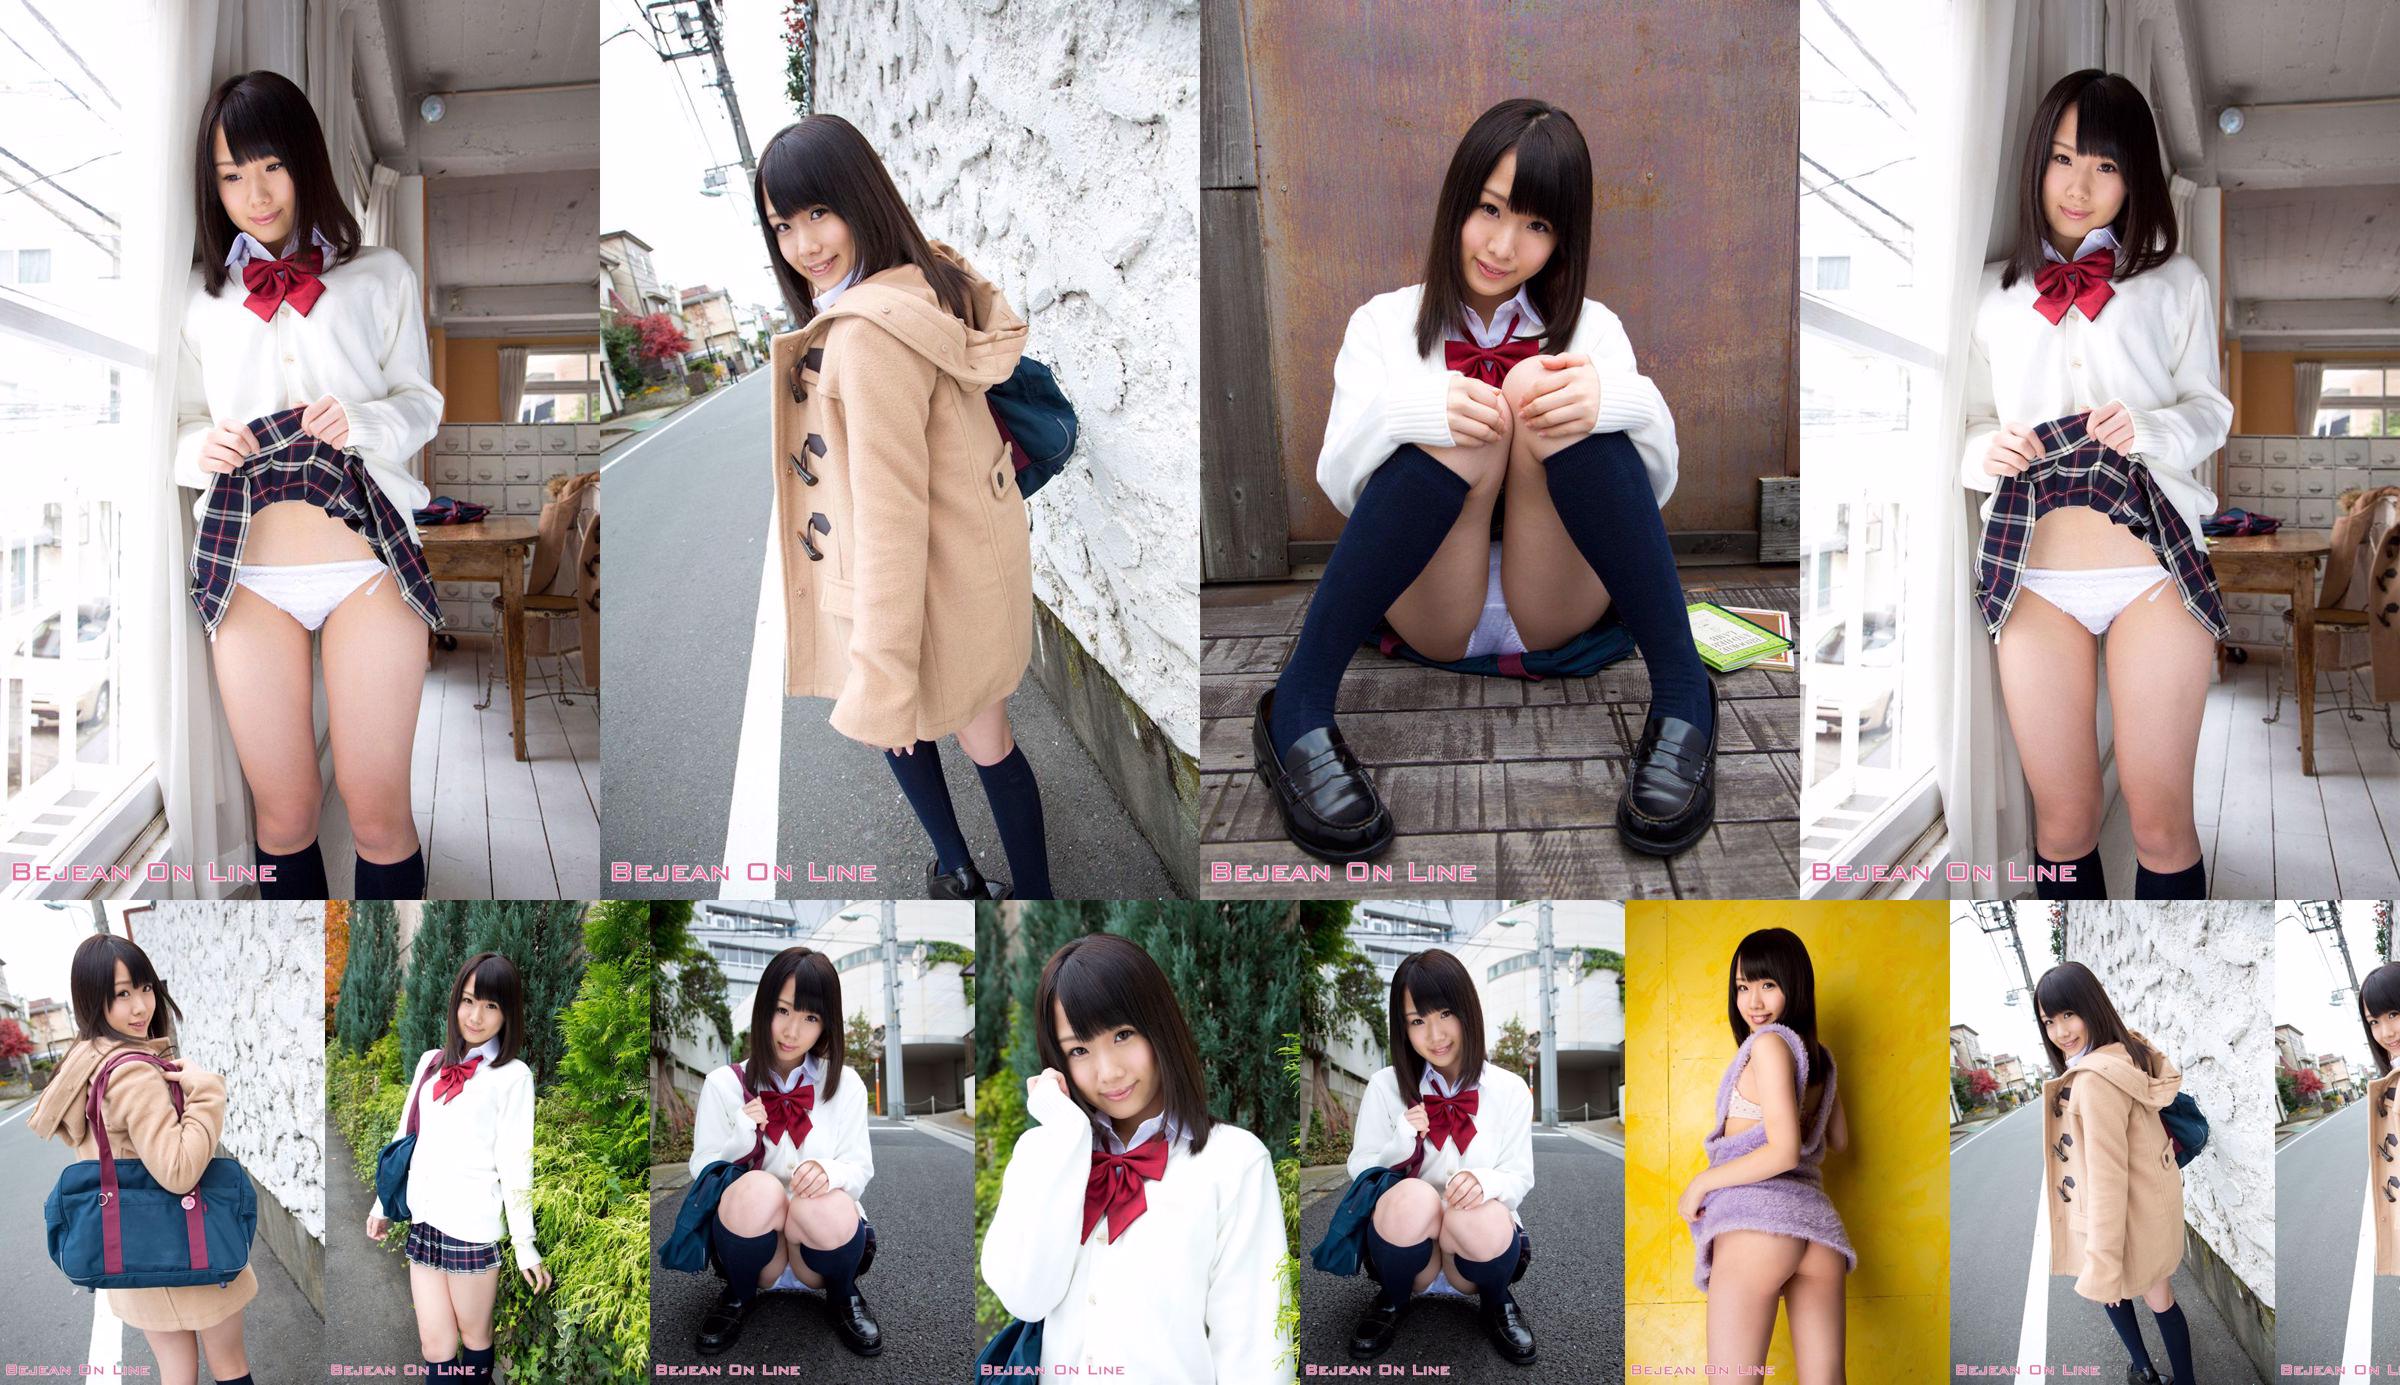 第一照片美女Ami Hyakutake Ami Hyakutake / Ami Hyakutake [Bejean On Line] No.c2c4f7 第3頁